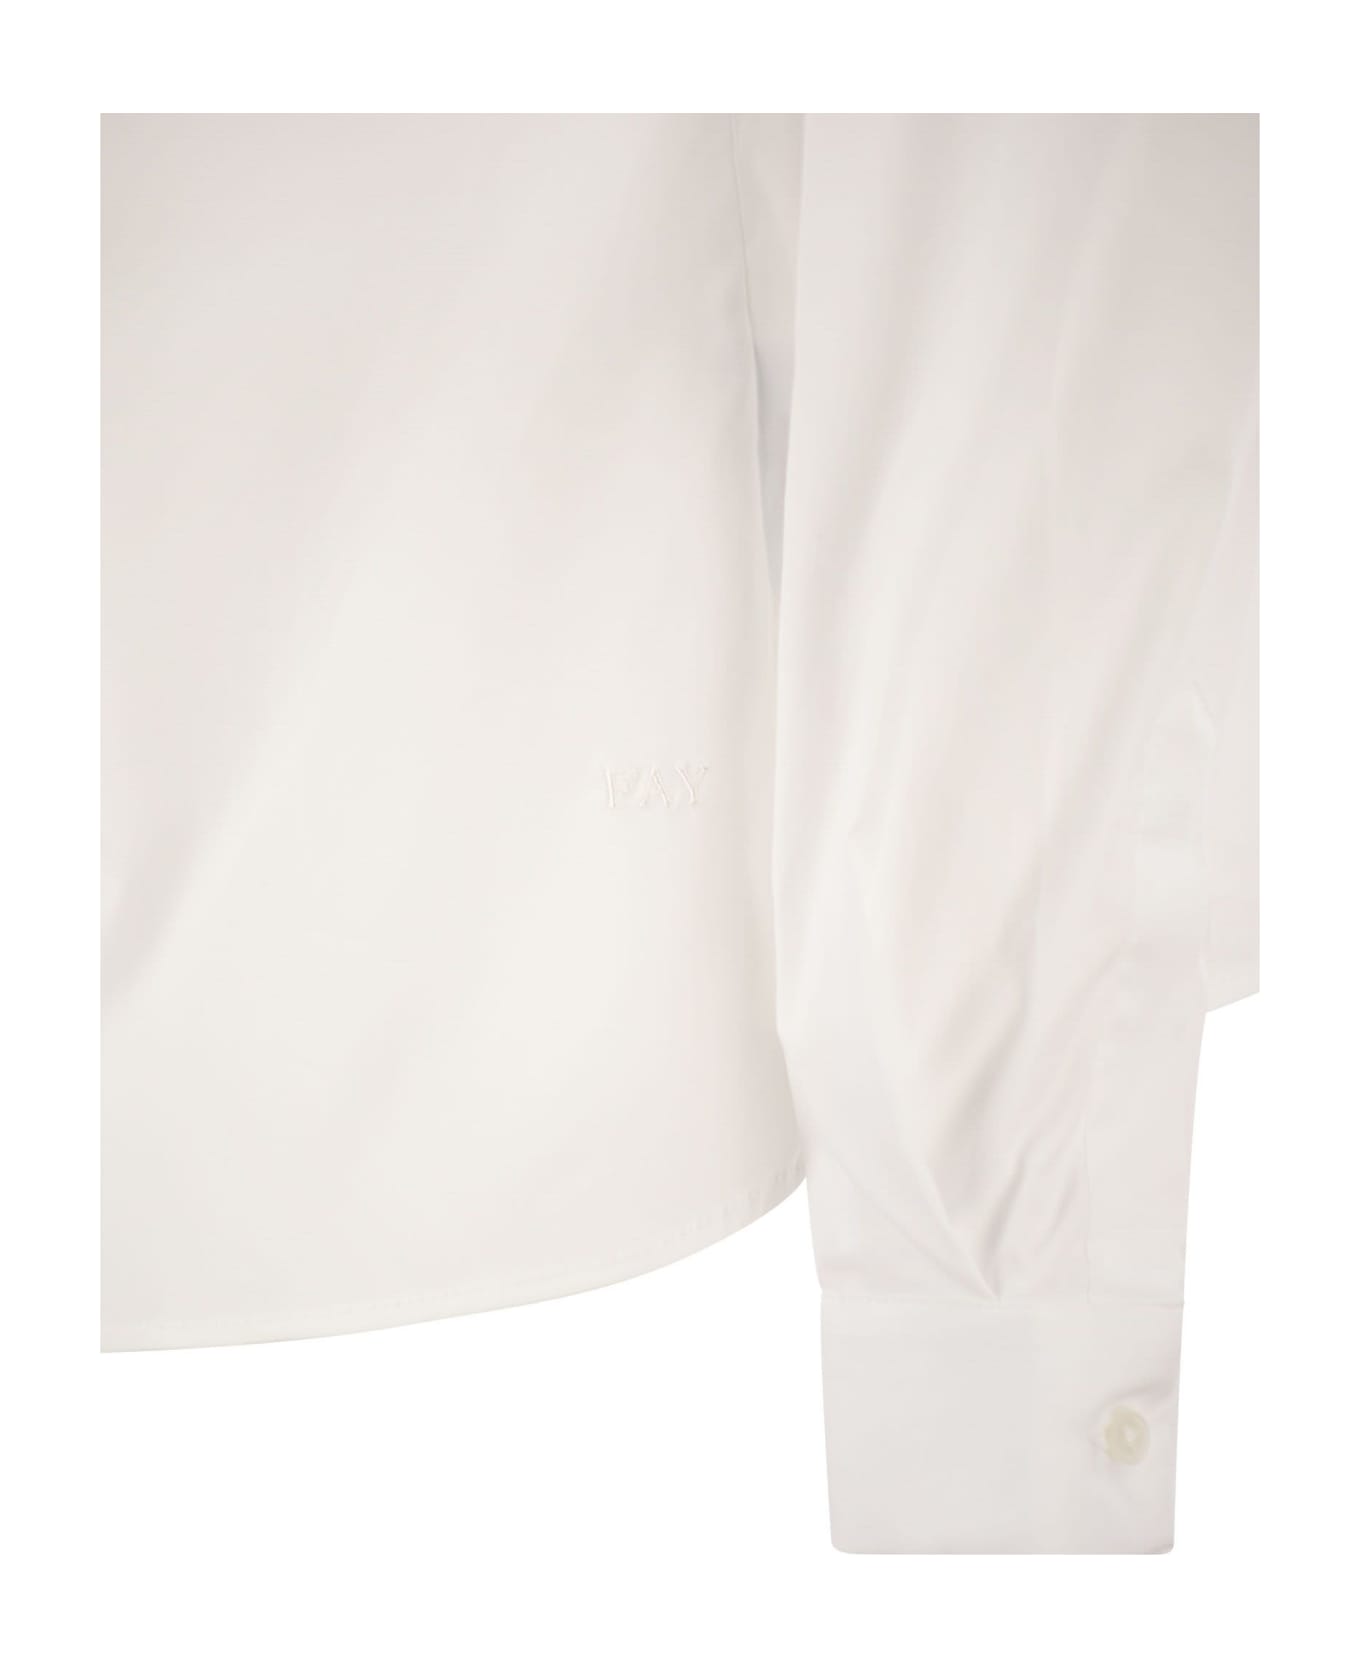 Fay Italian Neck Shirt - White